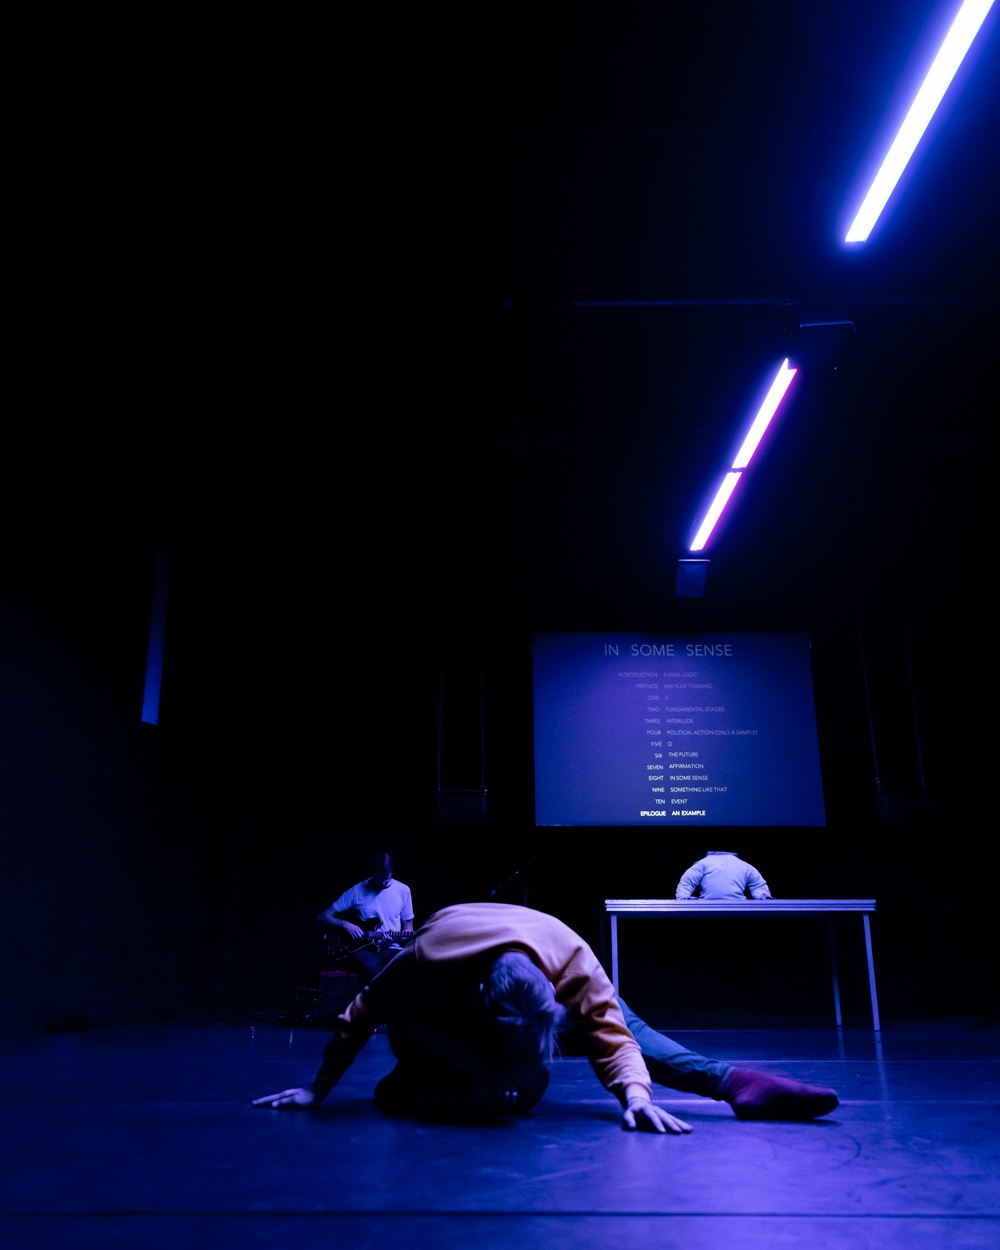 En mörk scen med svagt blått ljus som strilar ner. I bakgrunden en projektionsduk med text. Längst fram ligger en manlig dansare. I bakgrunden skymtar en gitarrist.